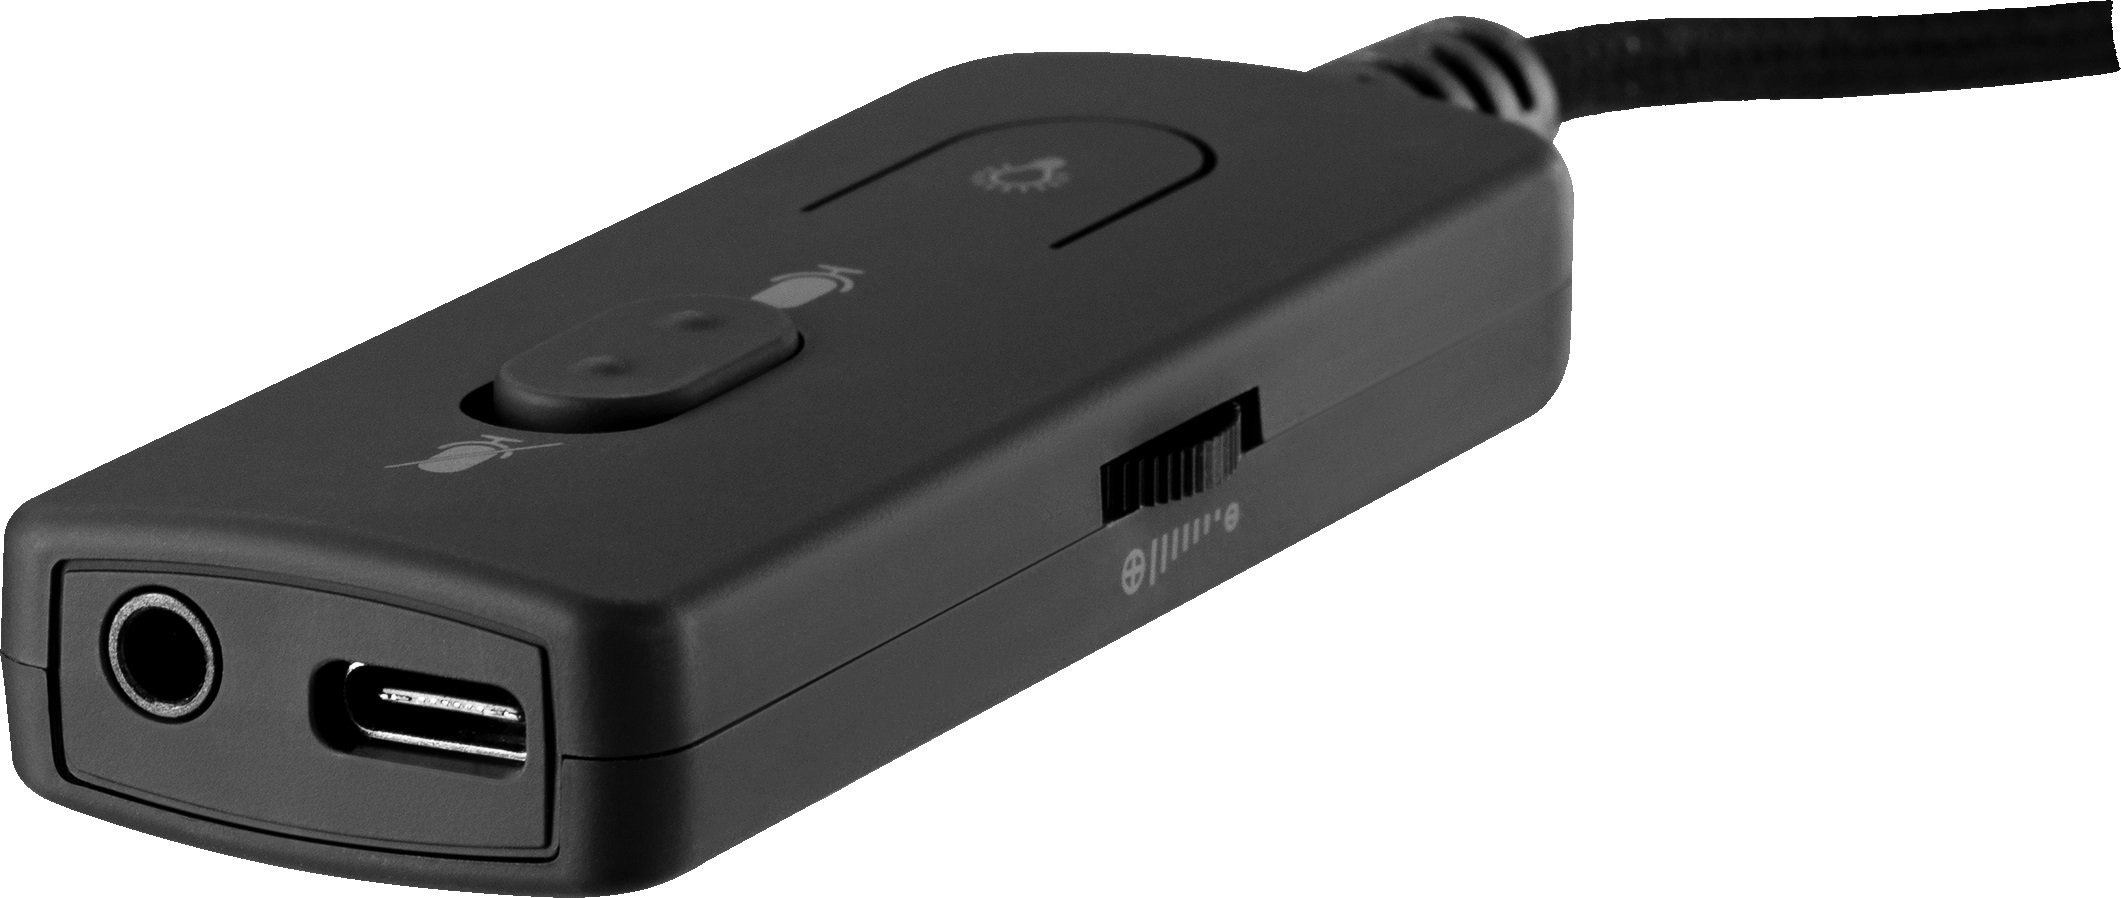 Игровые наушники 2E GAMING HG350 RGB USB 7.1 Black рассрочка